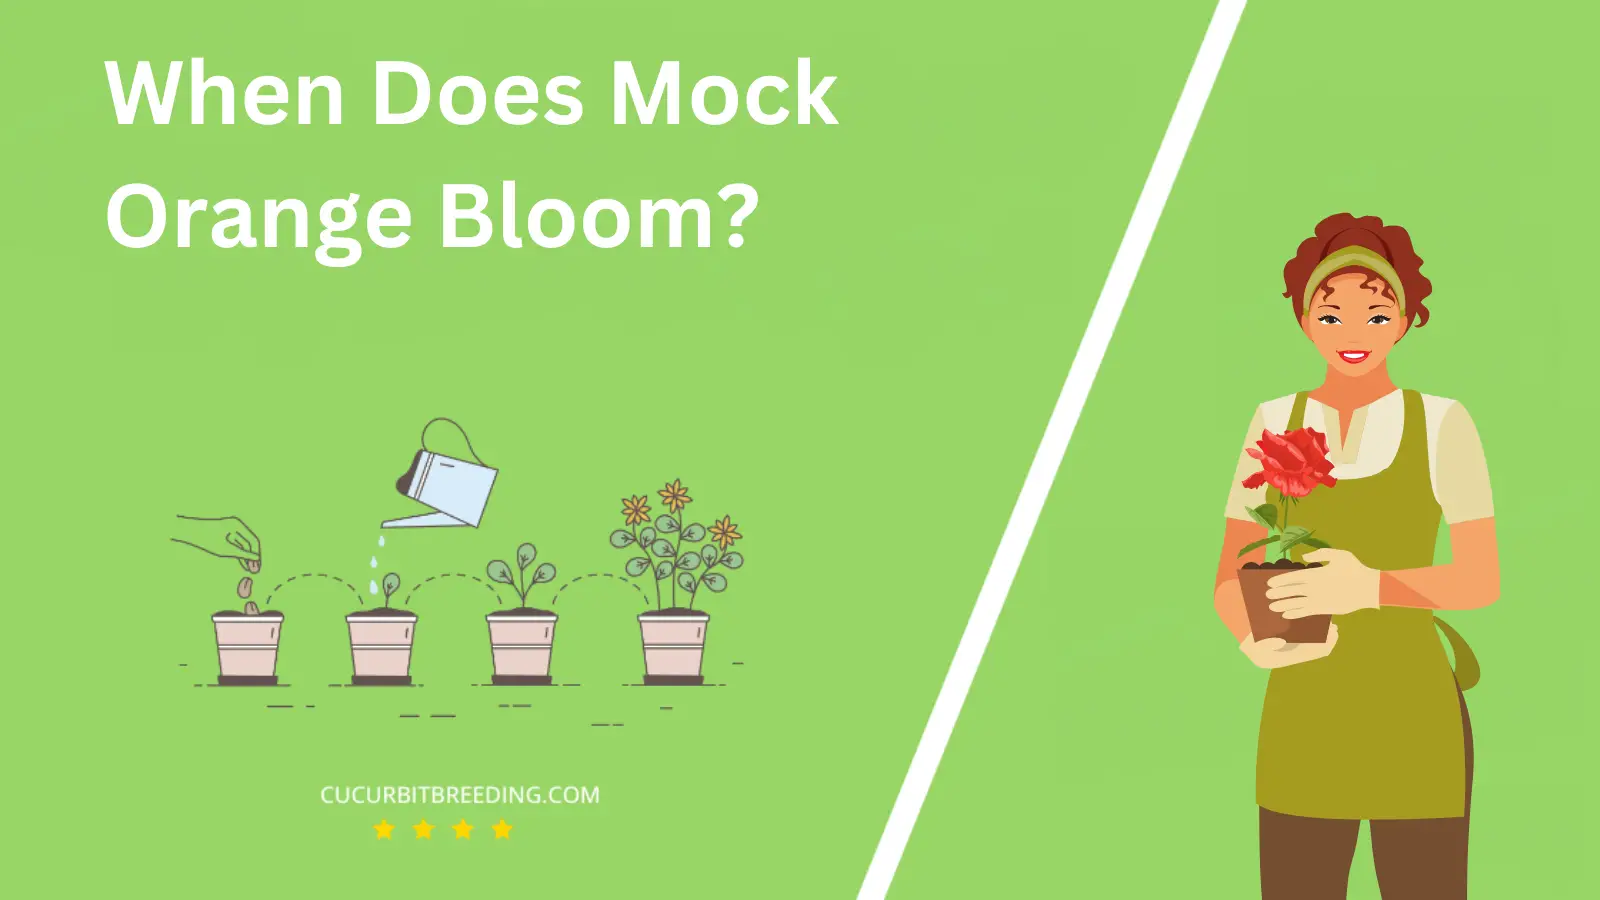 When Does Mock Orange Bloom?